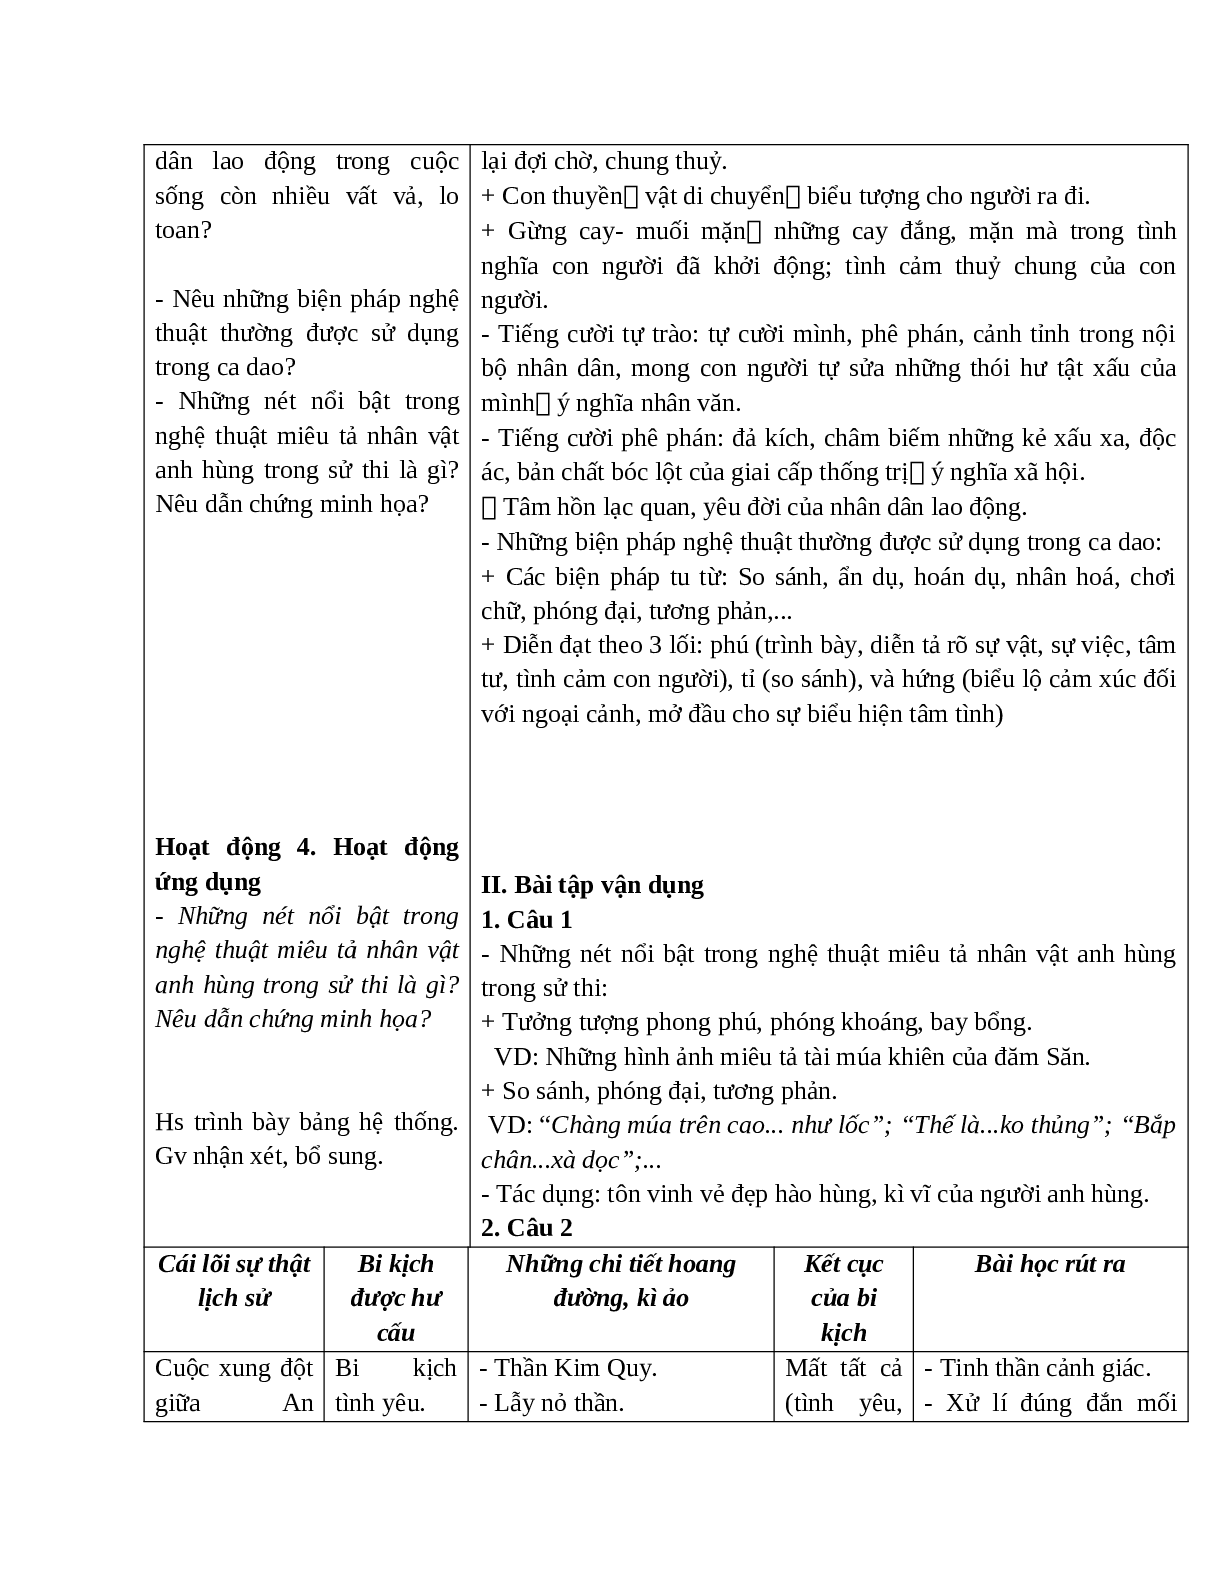 Giáo án Ngữ văn 10 tập 1 bài Ôn tập văn học dân gian Việt Nam mới nhất (trang 6)